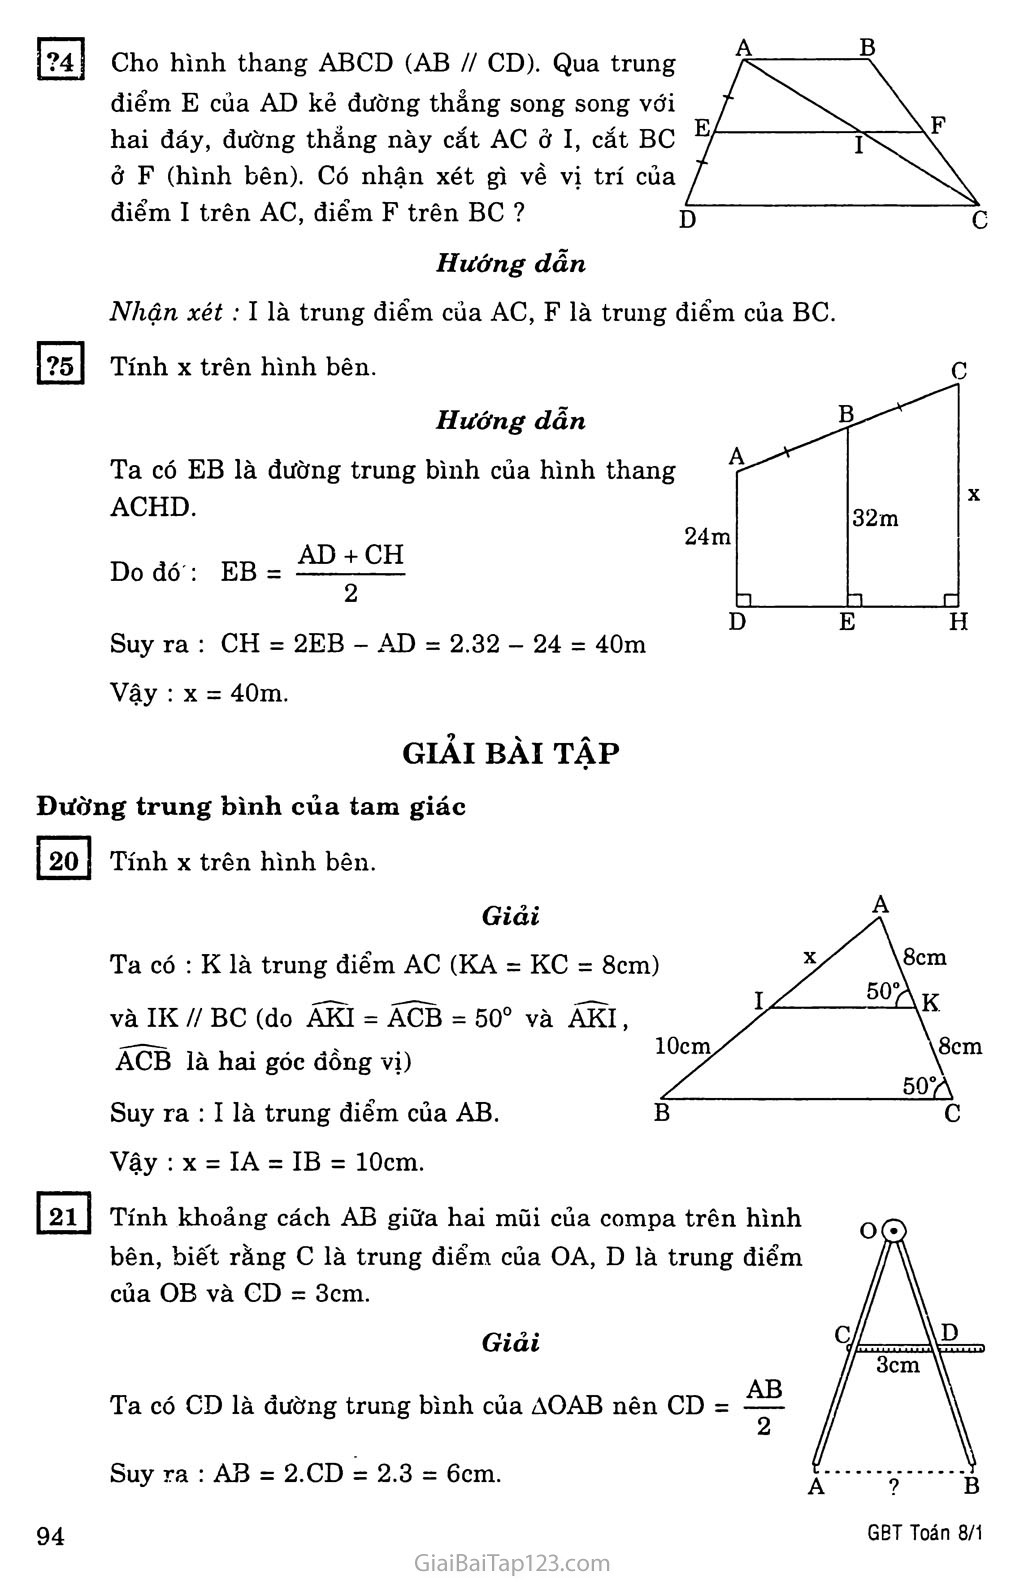 §4. Đường trung bình của tam giác, của hình thang trang 2